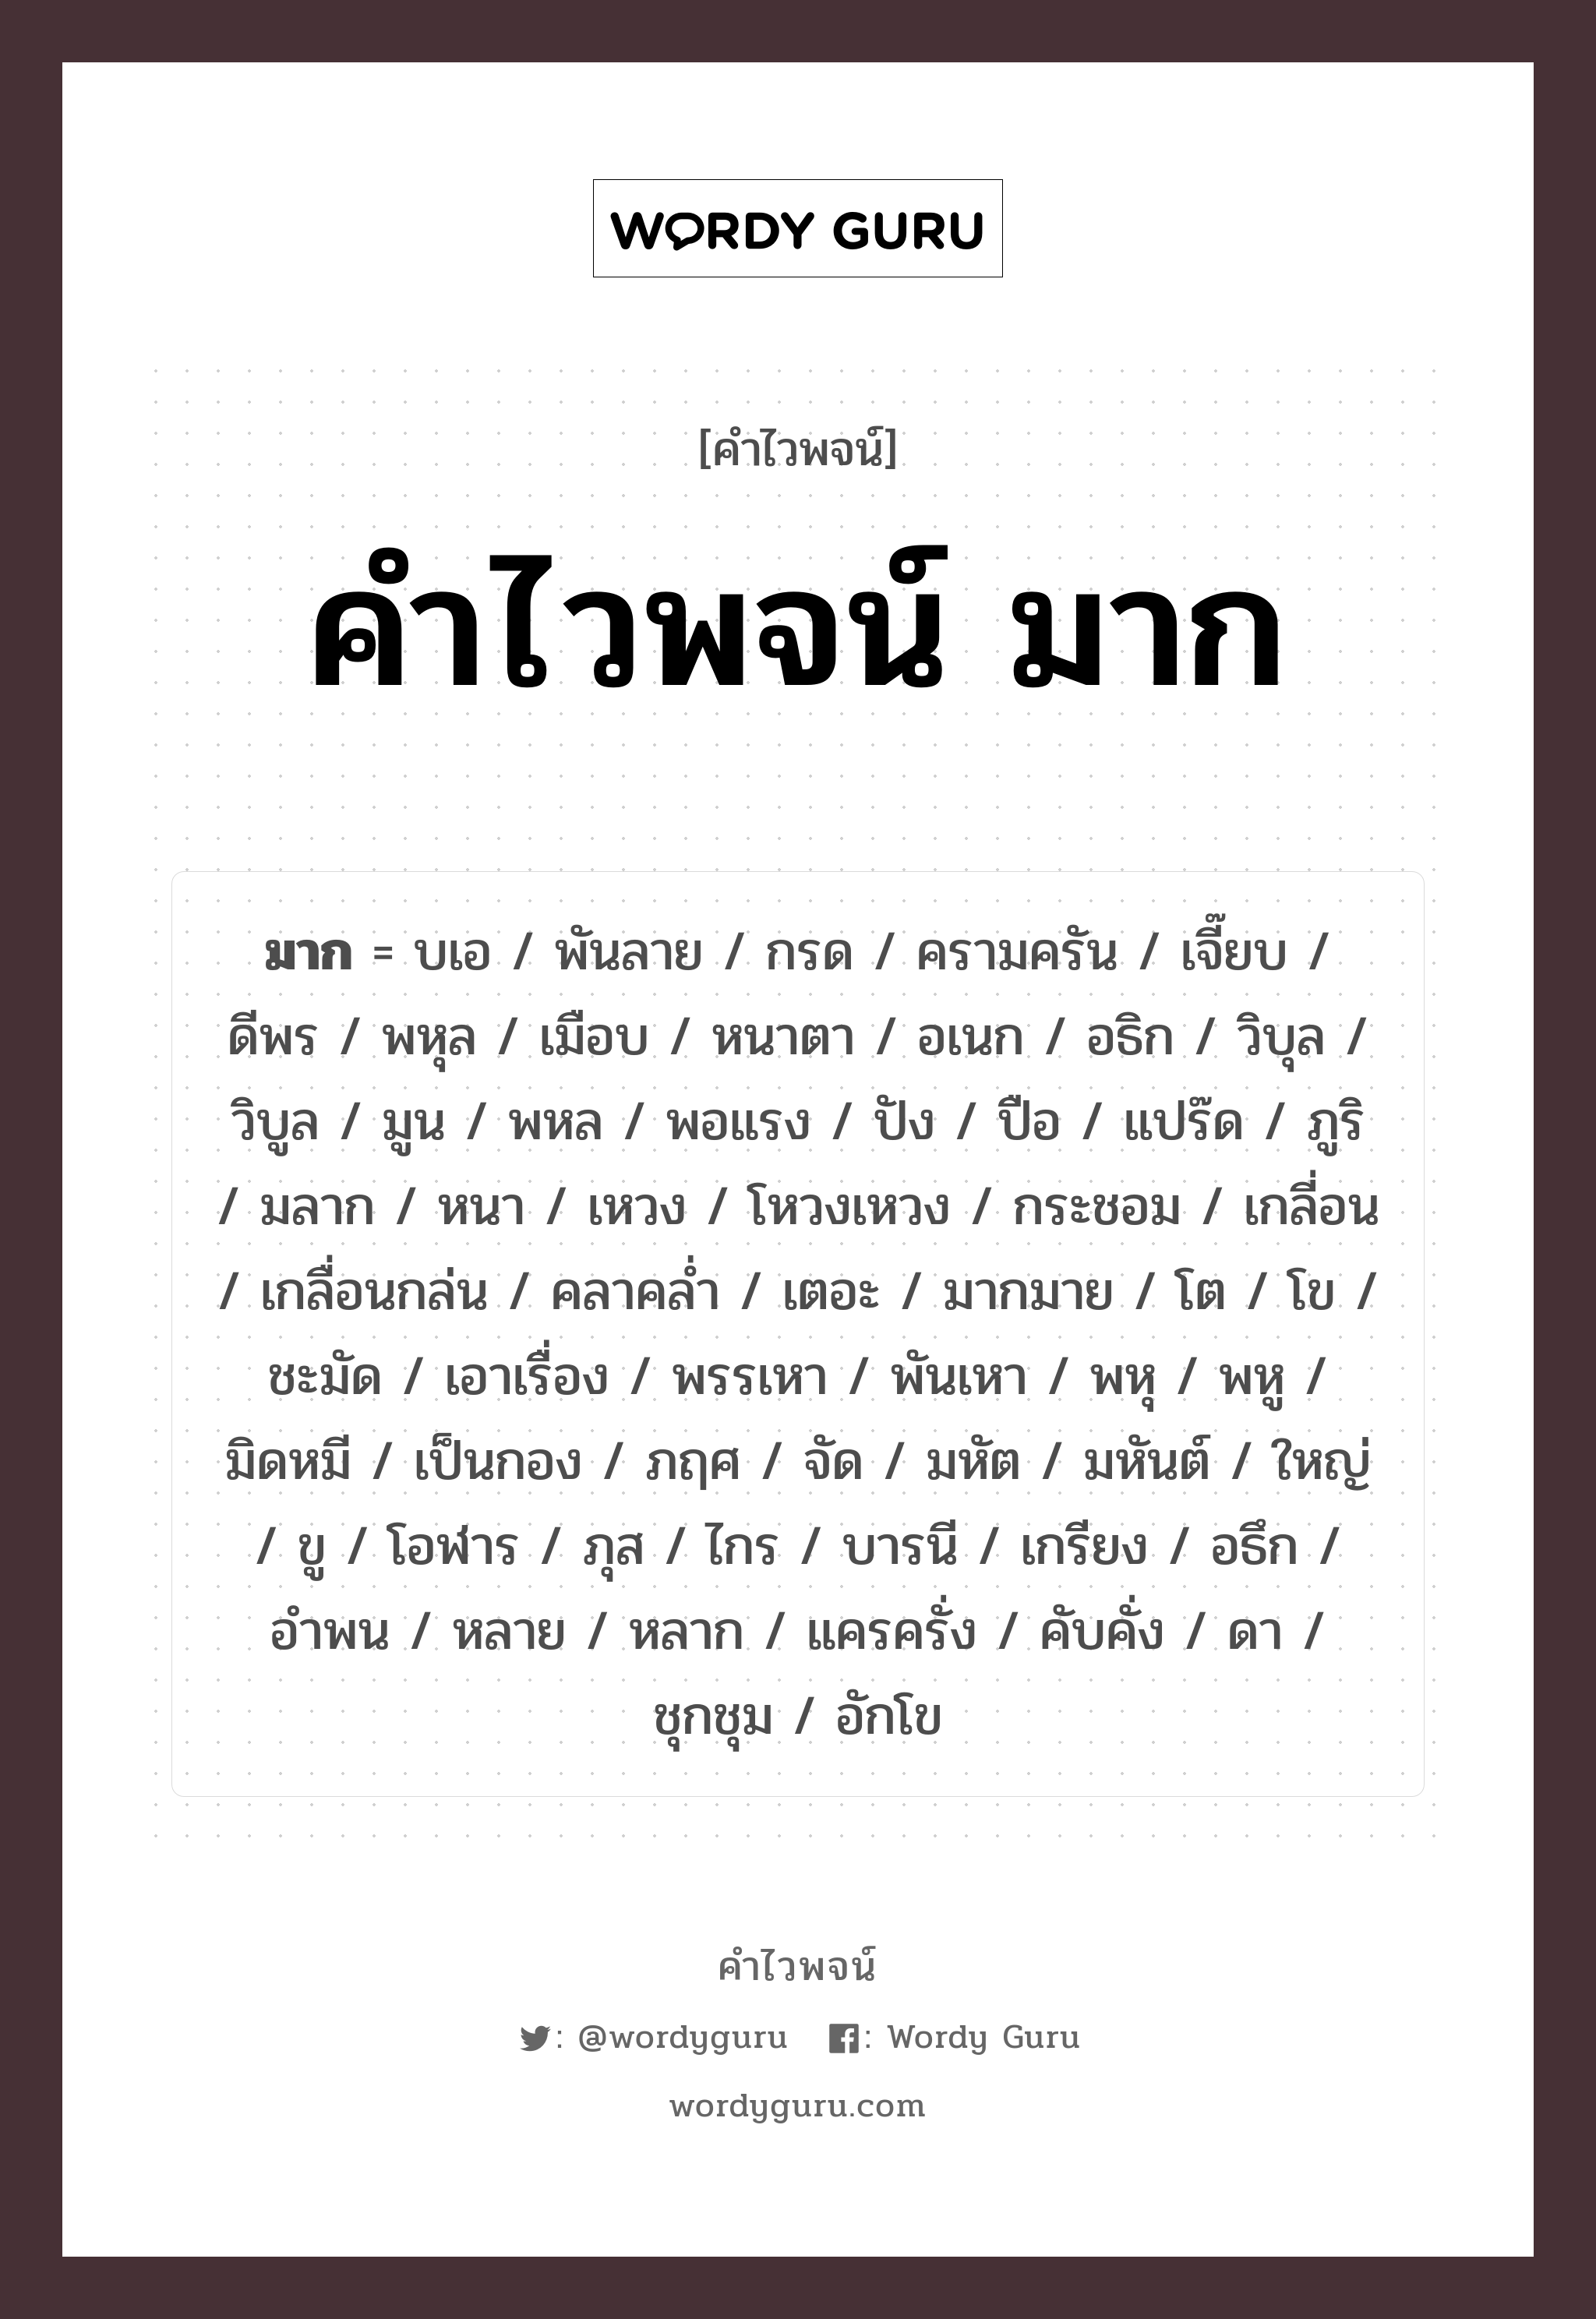 คำไวพจน์: มูน, คำไวพจน์ มาก, คำในภาษาไทย มูน หมวดหมู่ คำไวพจน์ มาก กลุ่มคำไวพจน์ คำไวพจน์กลุ่ม บอกปริมาณ/ขนาด หมวด คำไวพจน์ มาก